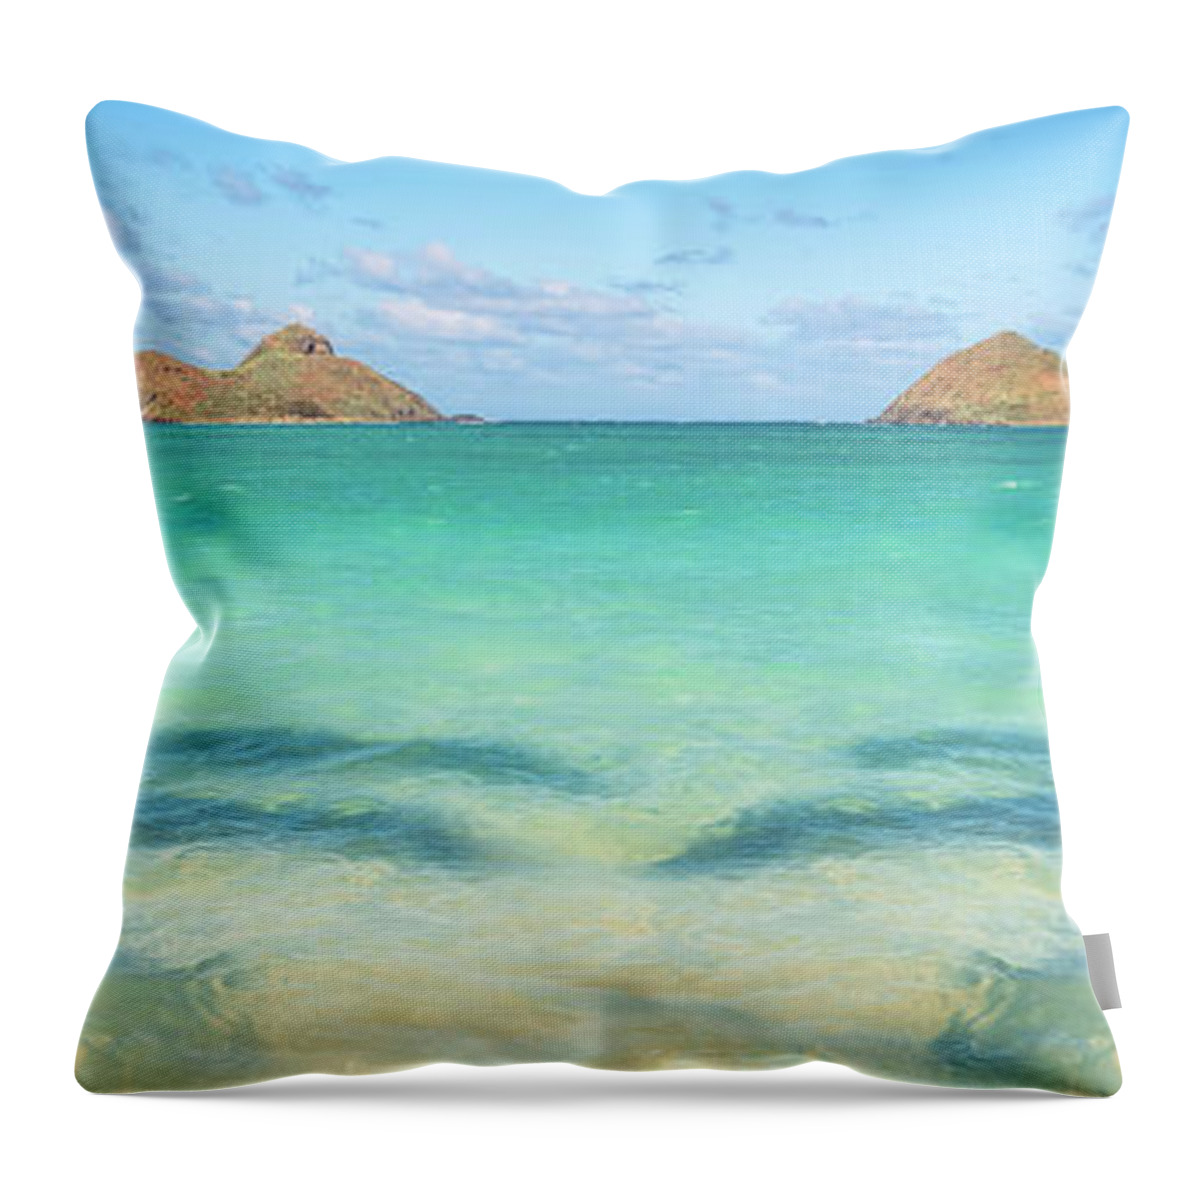 Lanikai Beach Throw Pillow featuring the photograph Lanikai Beach Palm Tree Shadows Panorama by Aloha Art